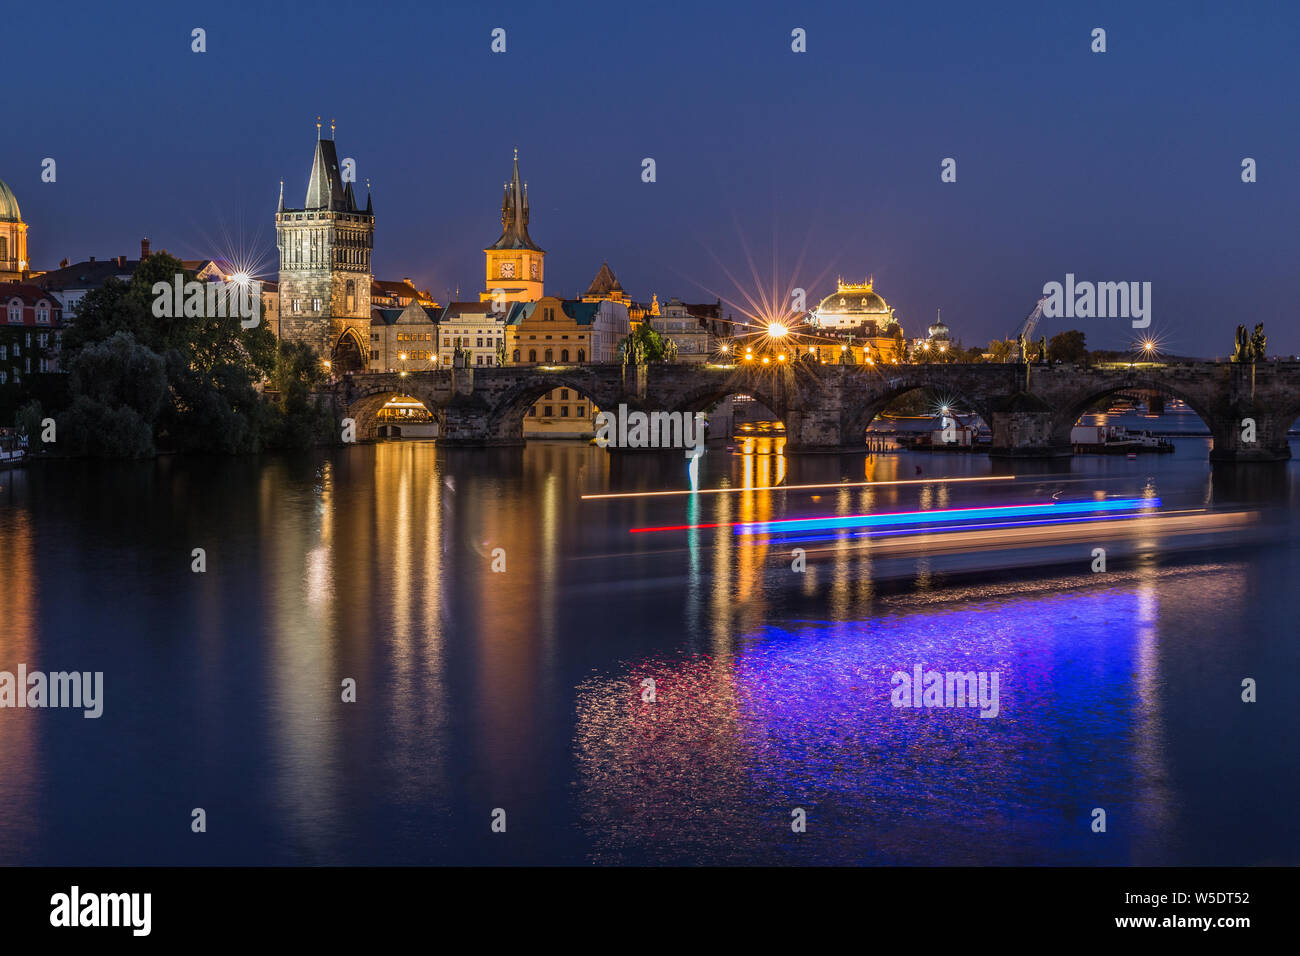 Altstadt Turm und die historische steinerne Brücke mit Beleuchtung und Reflexionen aus dem Schiff auf dem Wasser. Prag mit Charles Bridge bei Nacht. Panoramaaussicht Stockfoto